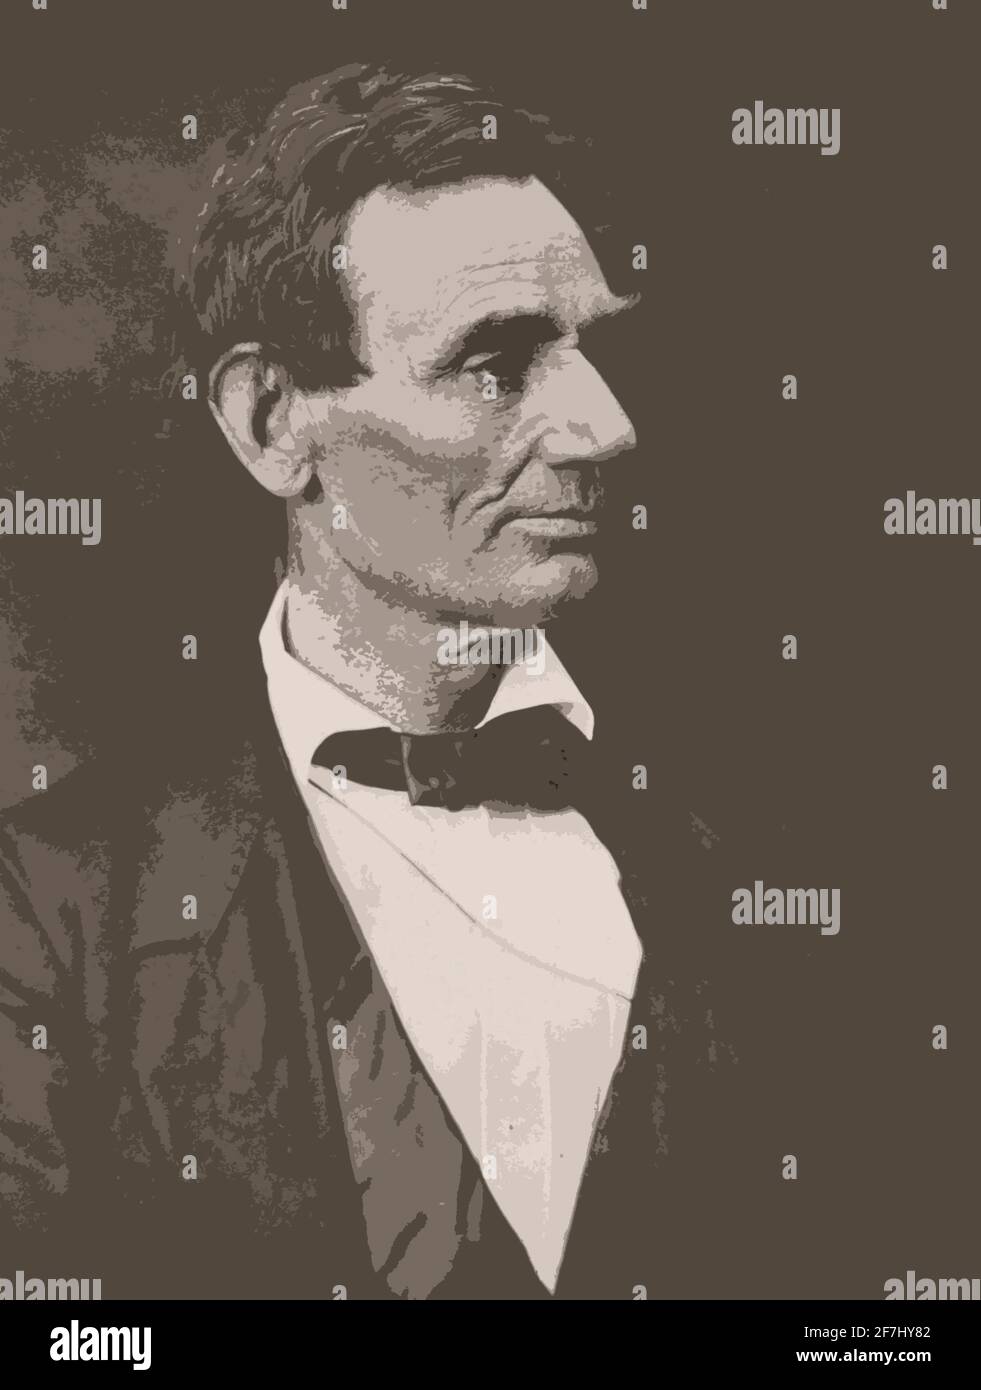 Un ritratto da studio del 1832 in bianco e nero dell'ex pesidentista statunitense Abraham Lincoln alterato digitalmente e colorato per un effetto artistico. Foto Stock